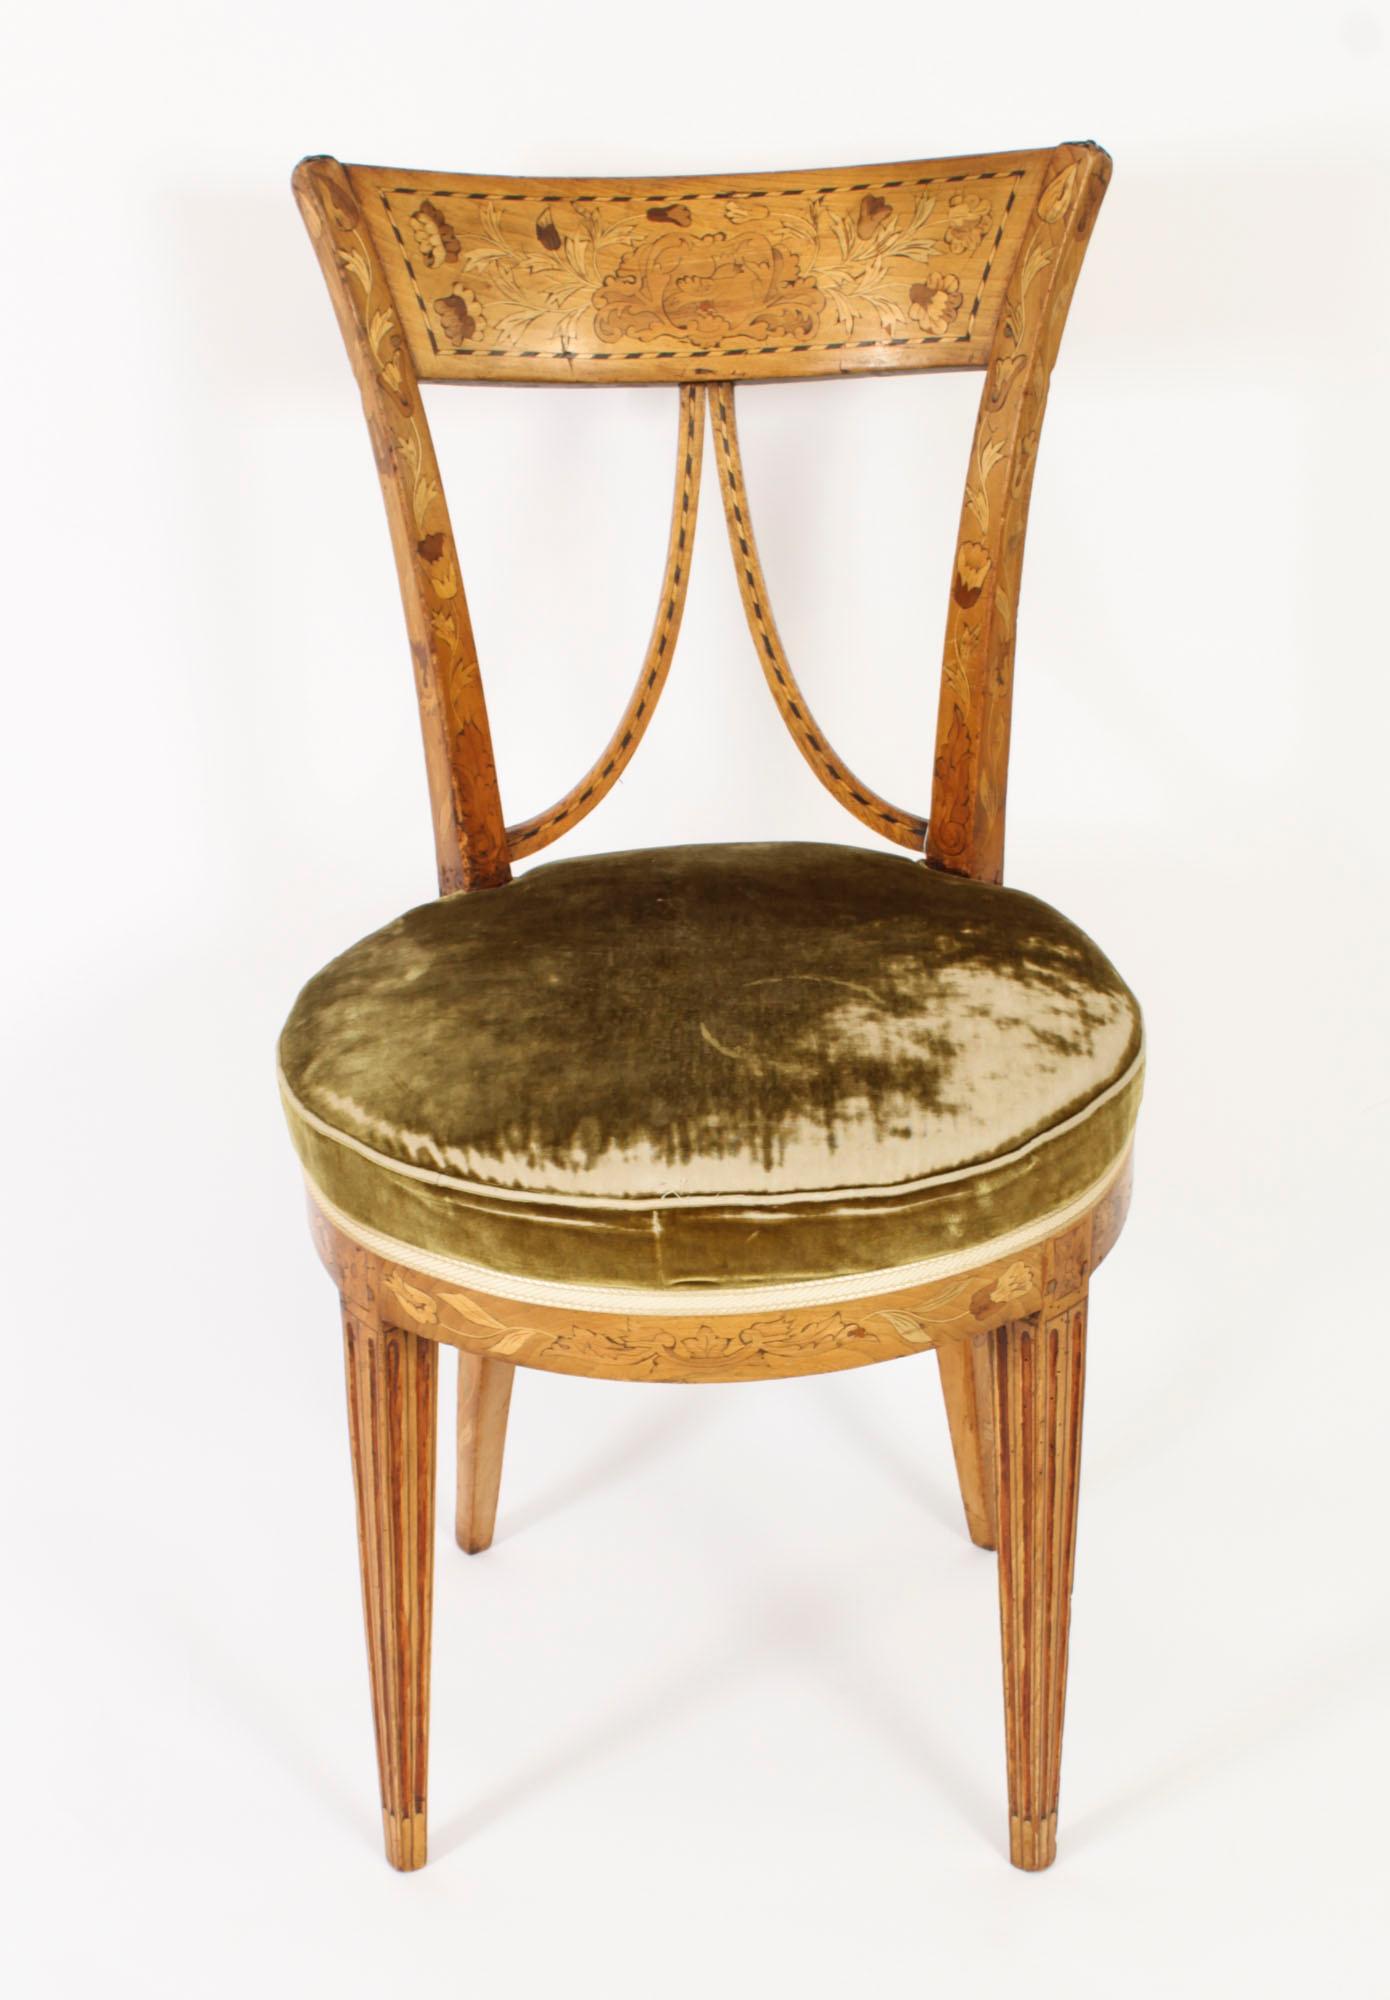 Il s'agit d'une belle chaise hollandaise ancienne à dossier en V en bois satiné et marqueterie, datant d'environ 1830.

Cette superbe chaise présente les caractéristiques suivantes  somptueuse marqueterie florale avec décor incrusté de lignes